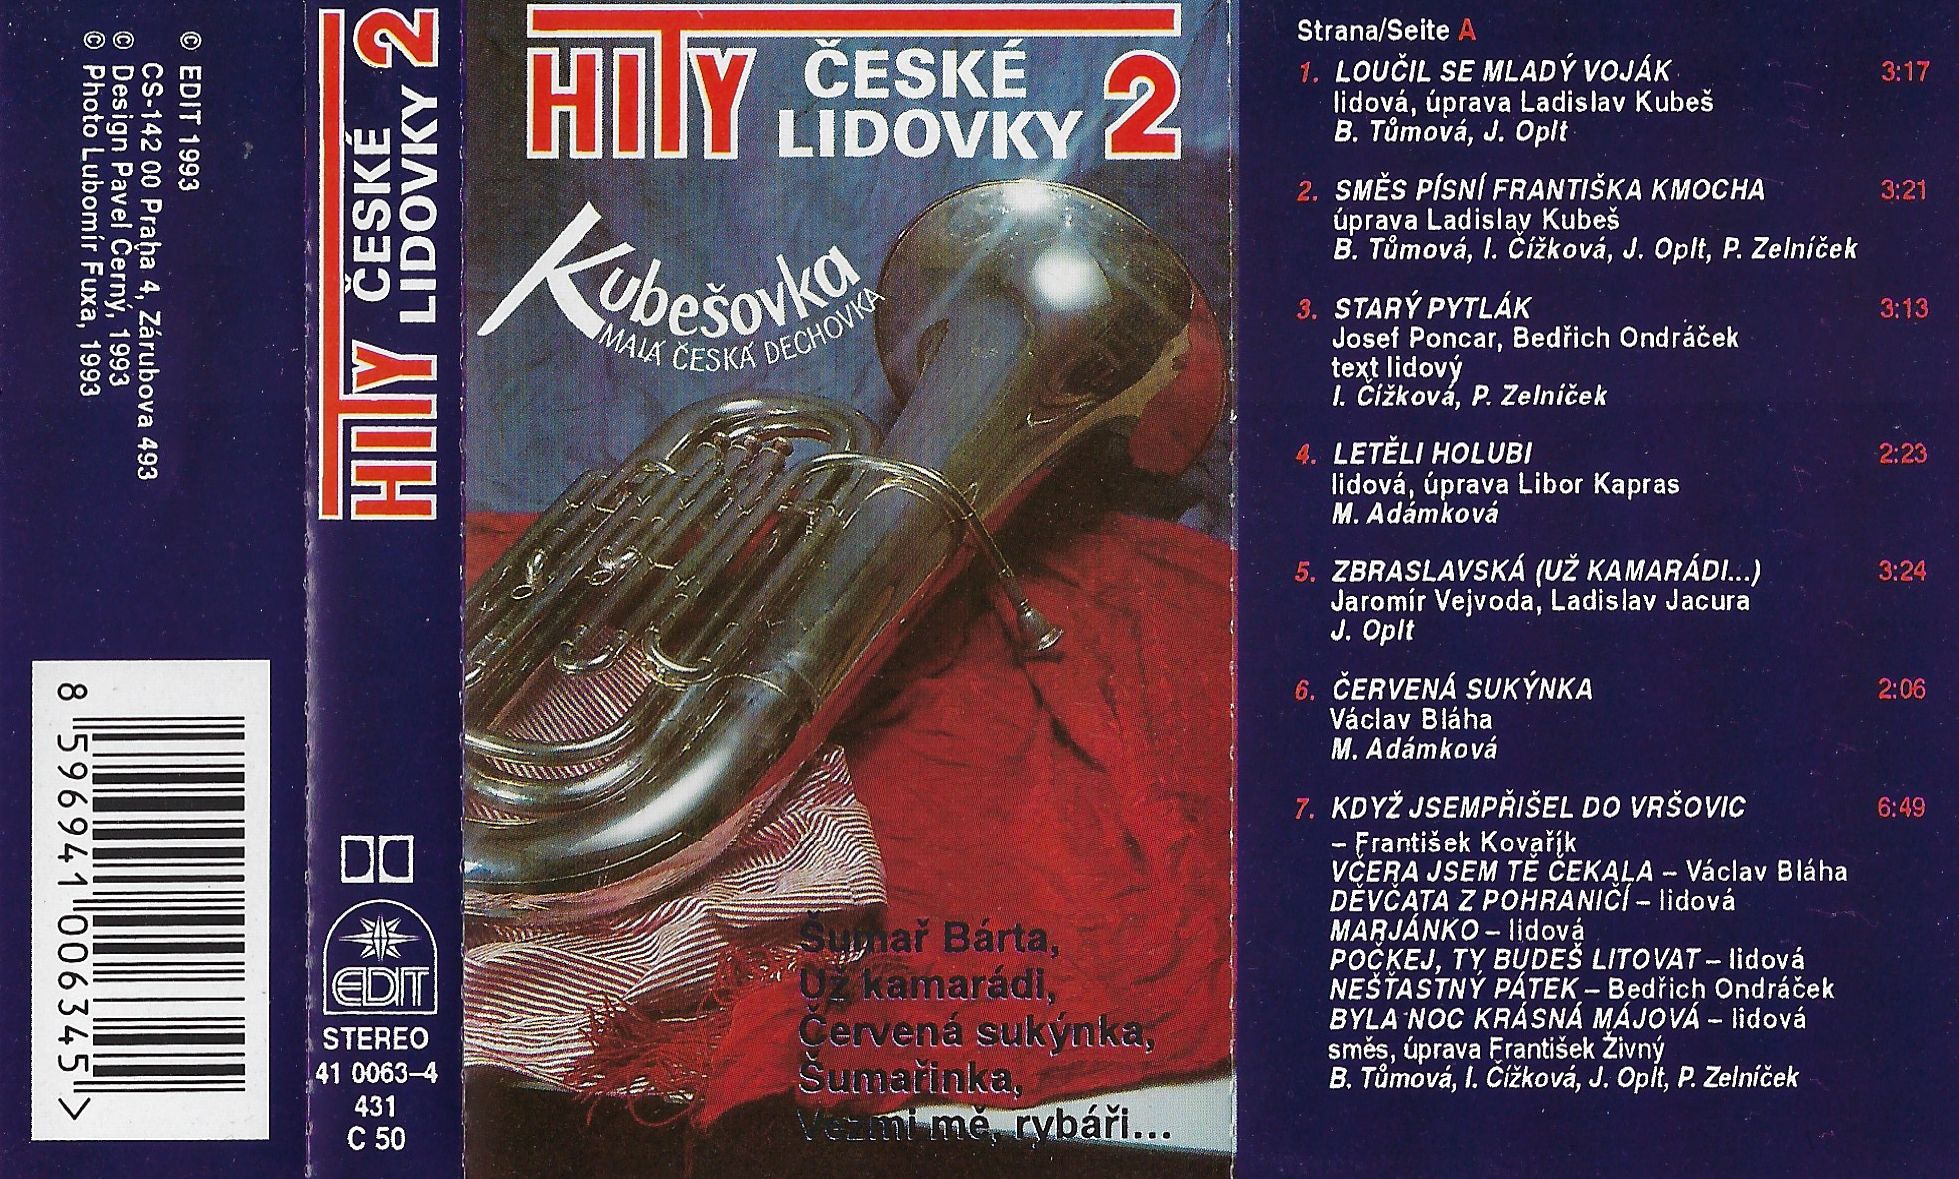 MC - Hity české lidovky 2